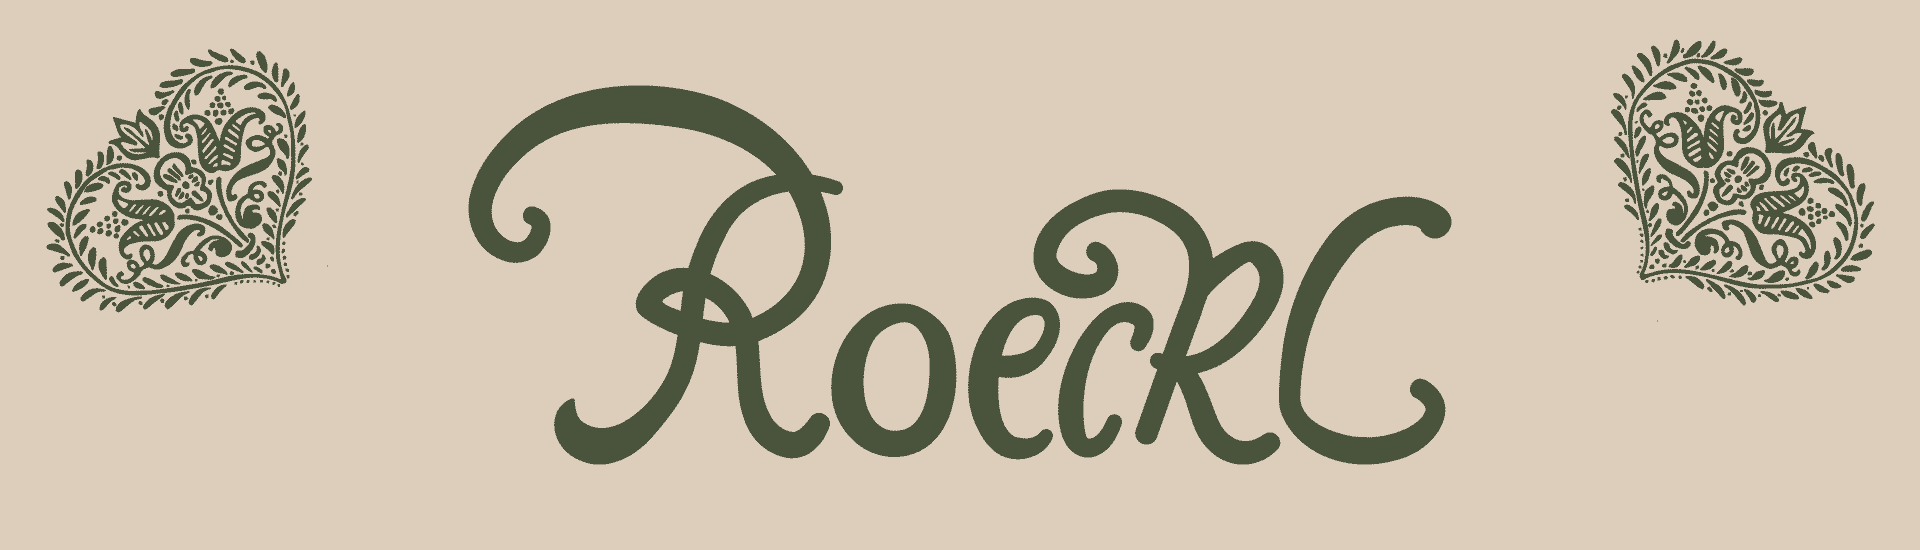 ROECKL Bavaria Collection Banner in beige